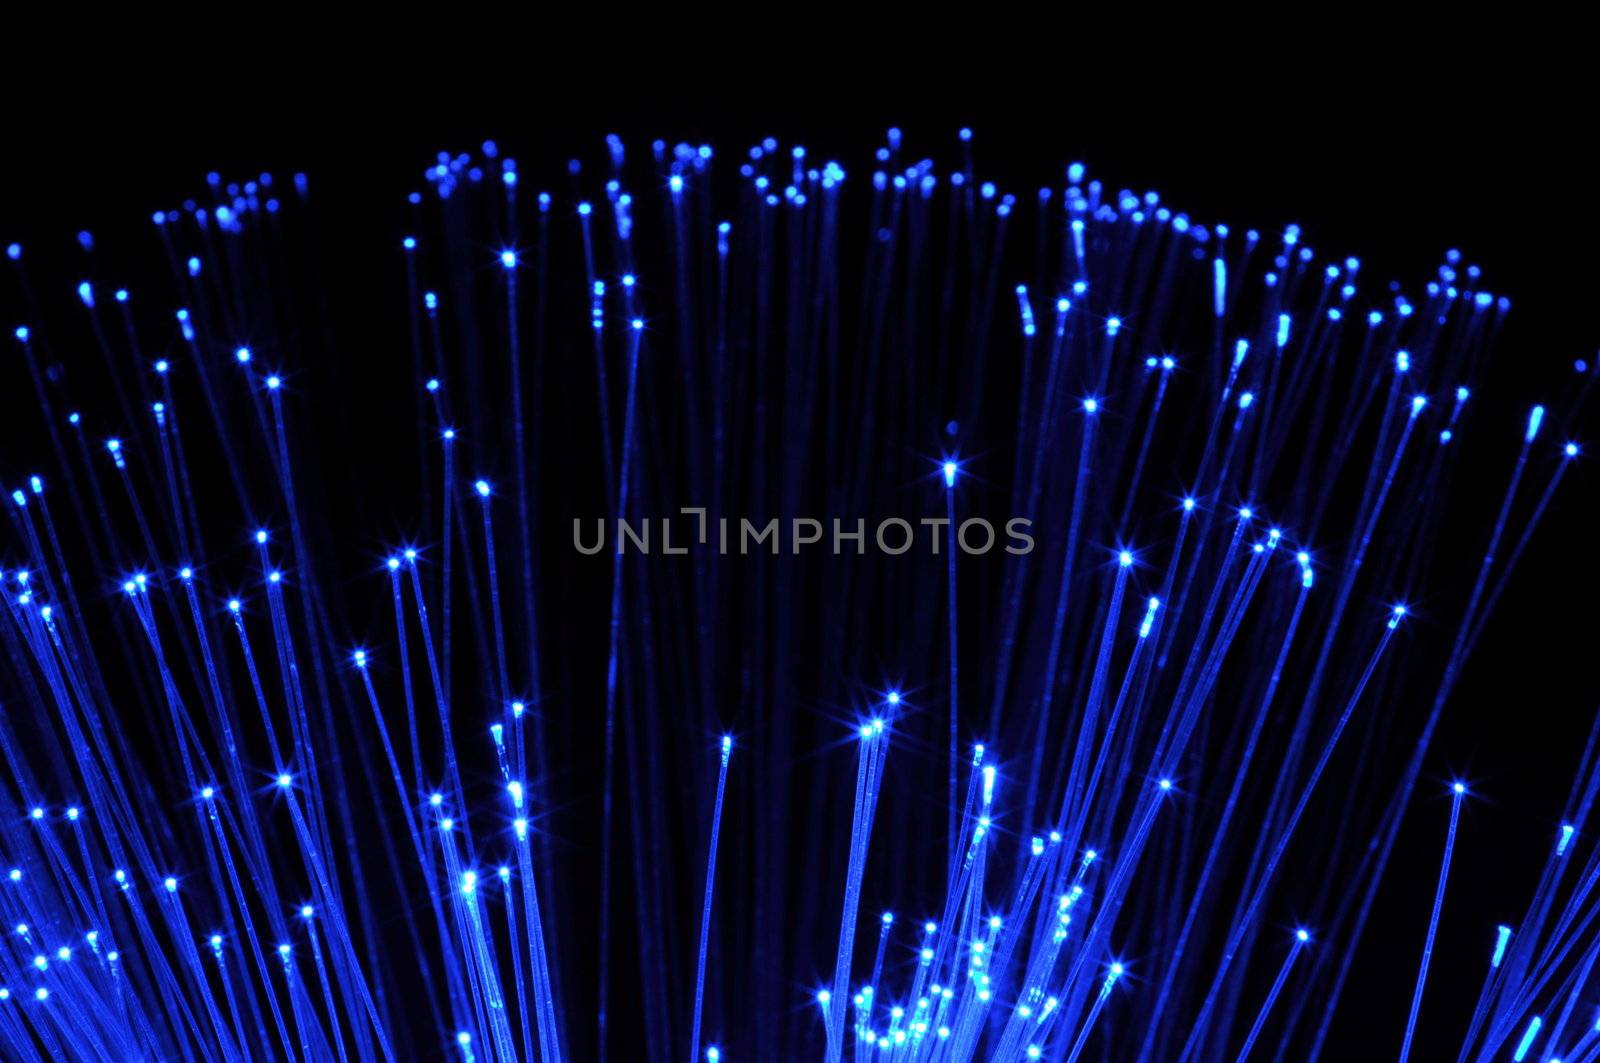 fiber optics by gunnar3000